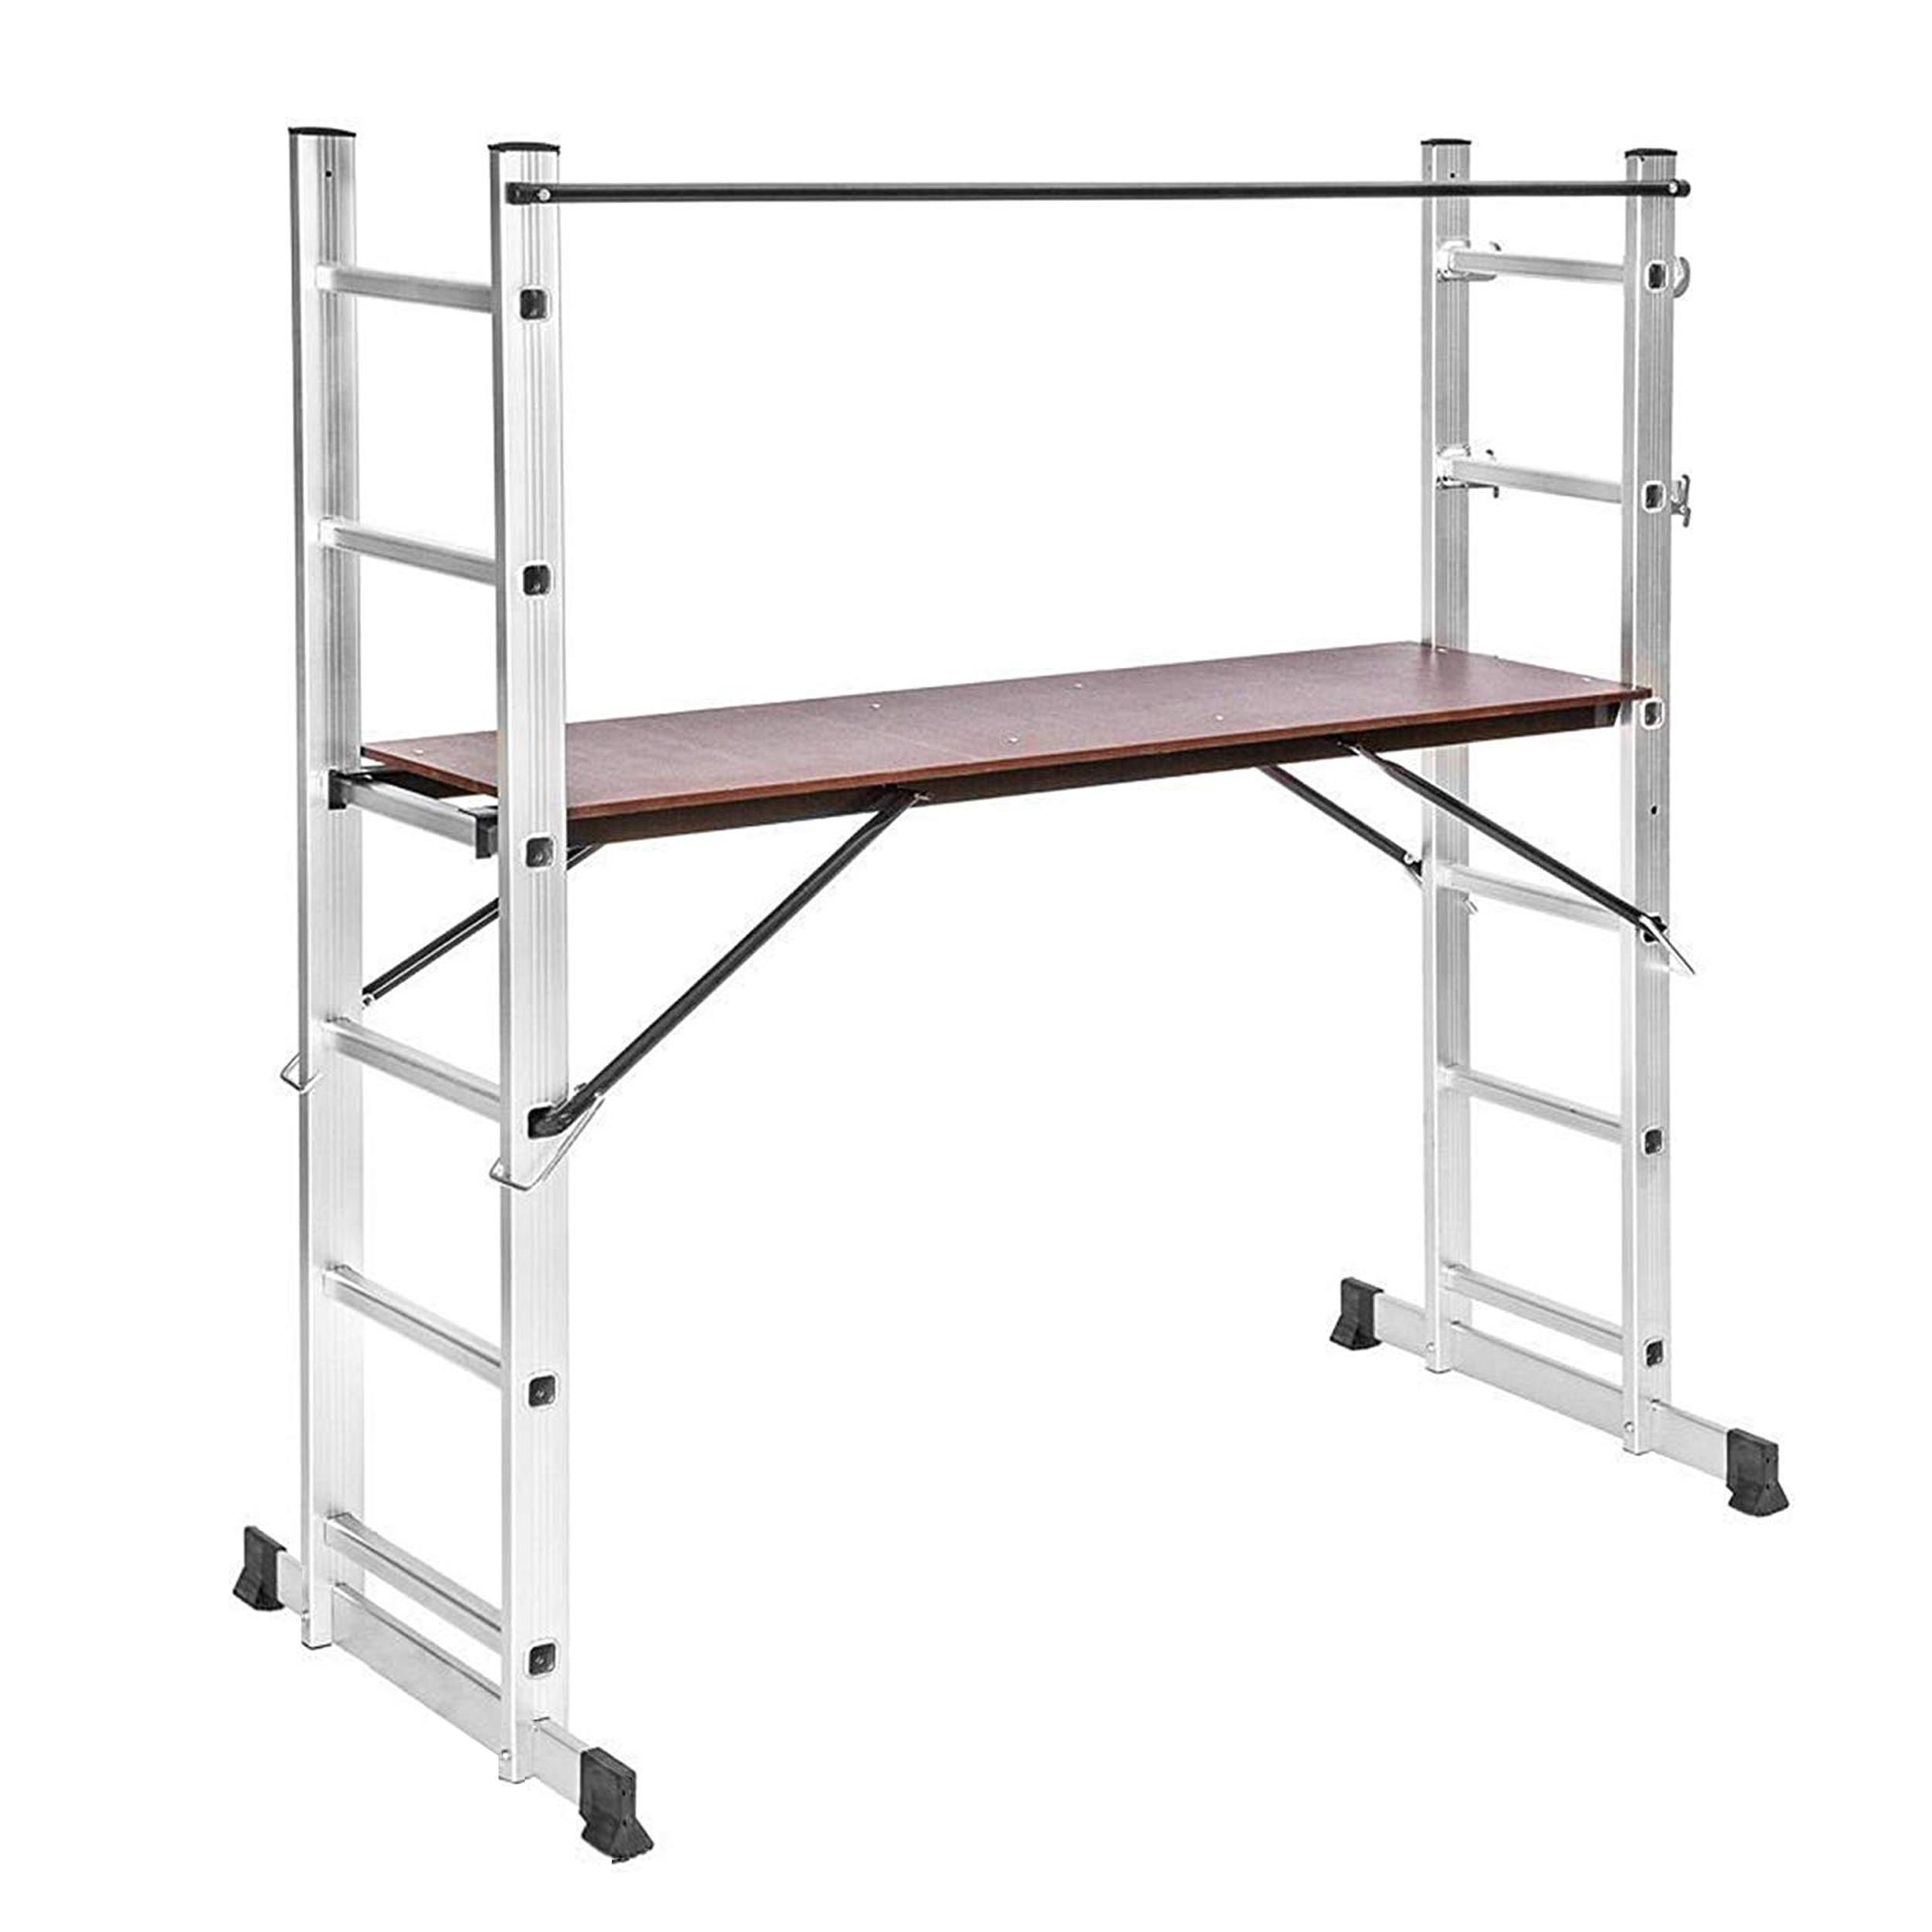 Safeline Scaffold Ladder